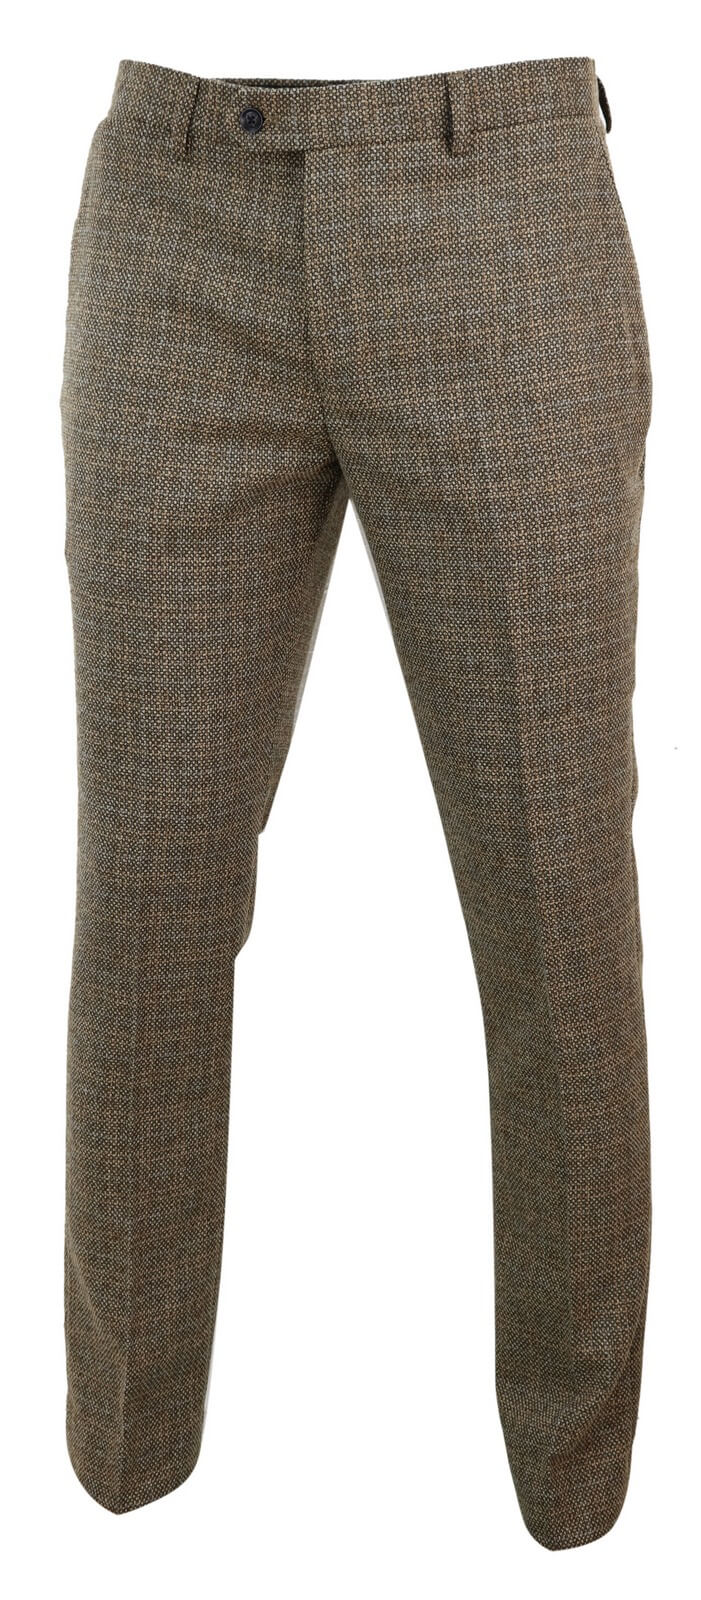 Mens Brown Tweed Suit Trousers: Buy Online - Happy Gentleman